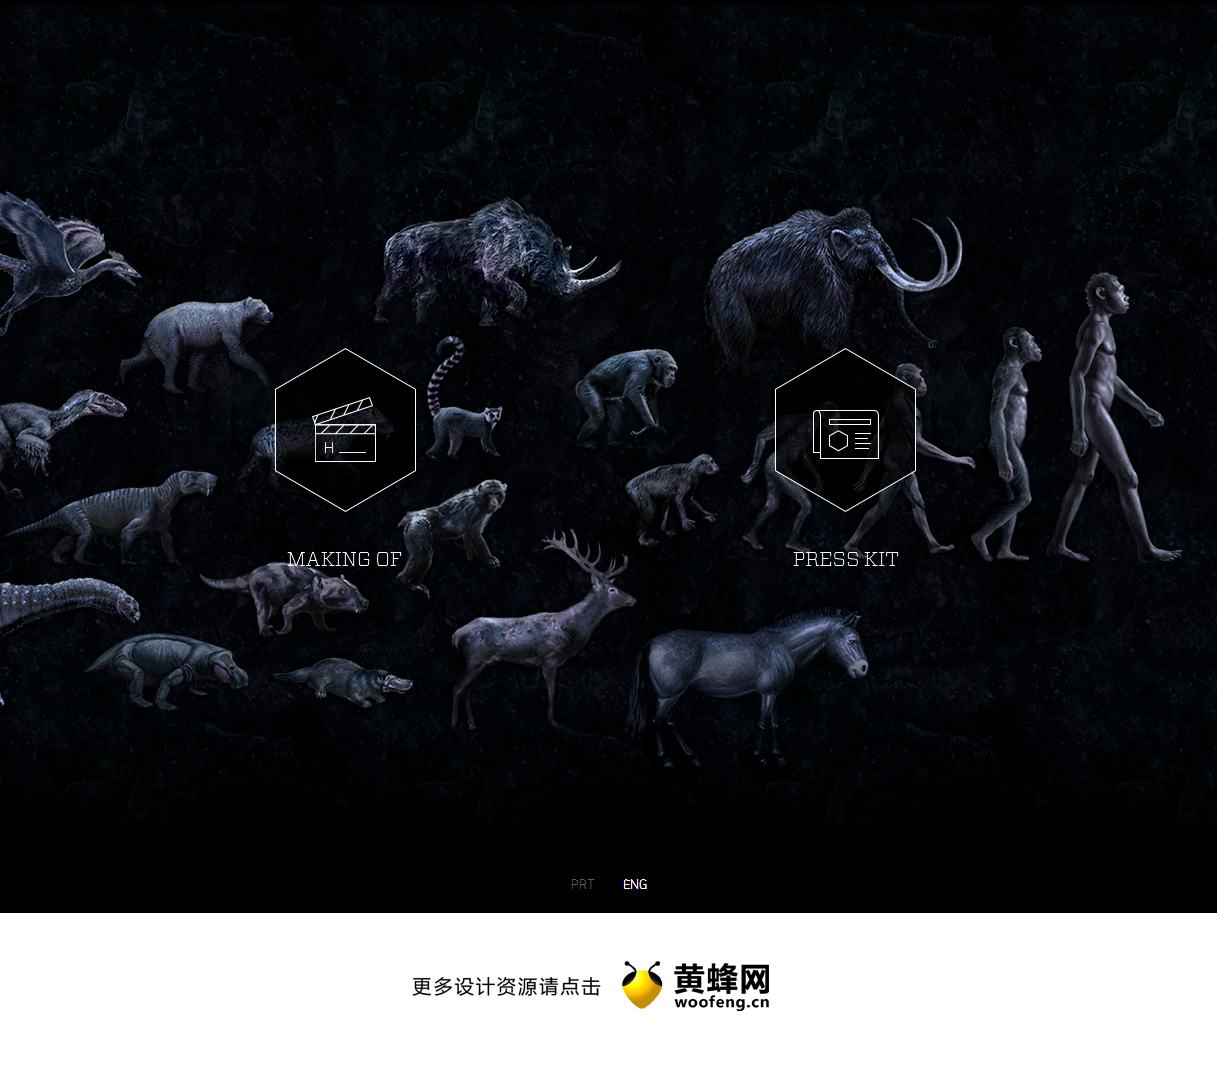 六面体，讲述的故事，人类的进化。来源自黄蜂网https://woofeng.cn/web/